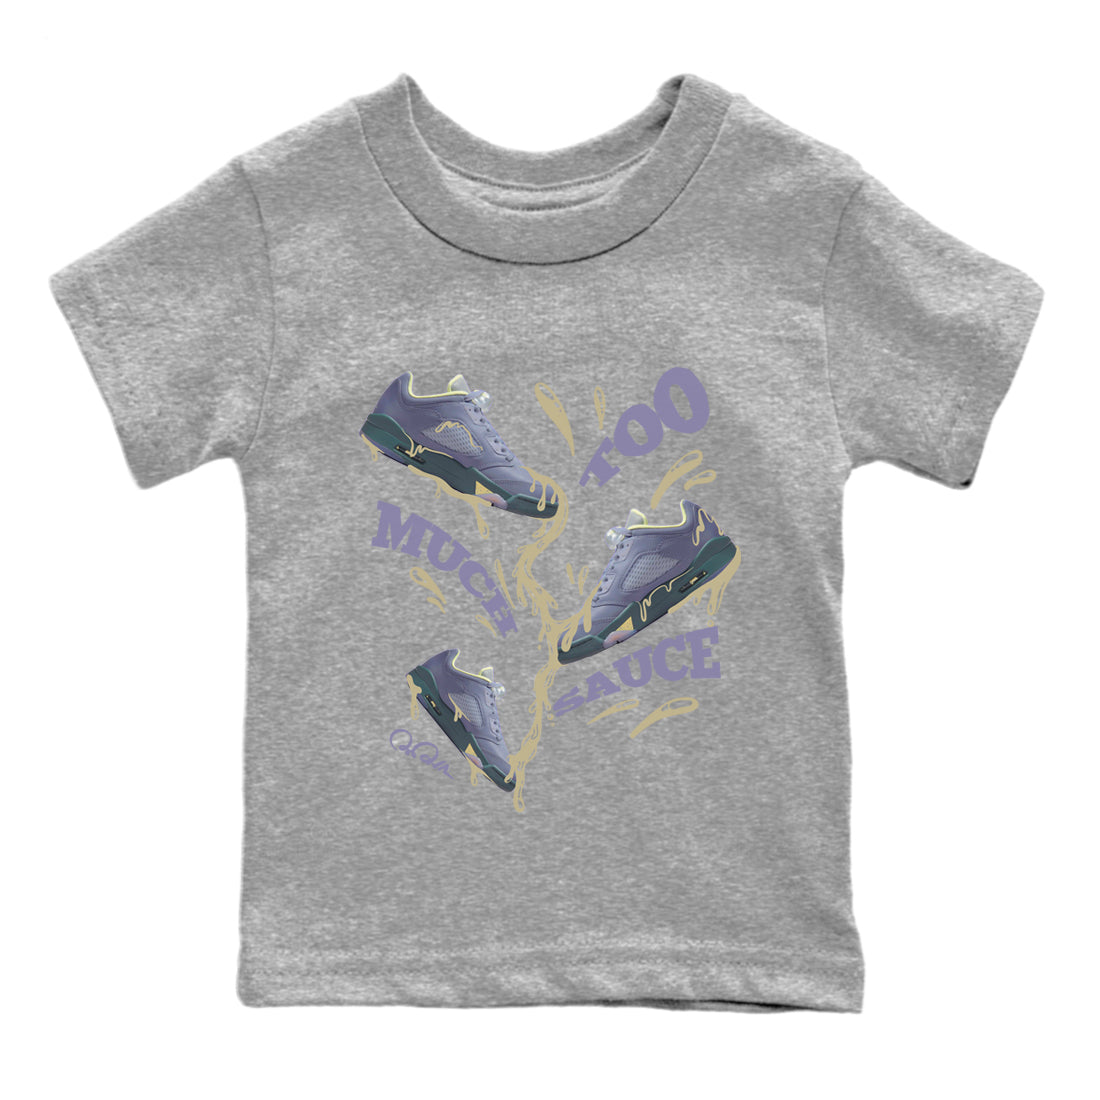 Air Jordan 5 Indigo Haze Sneaker Match Tees Too Much Sauce Sneaker Tees AJ5 Indigo Haze Sneaker Release Tees Kids Shirts Heather Grey 2